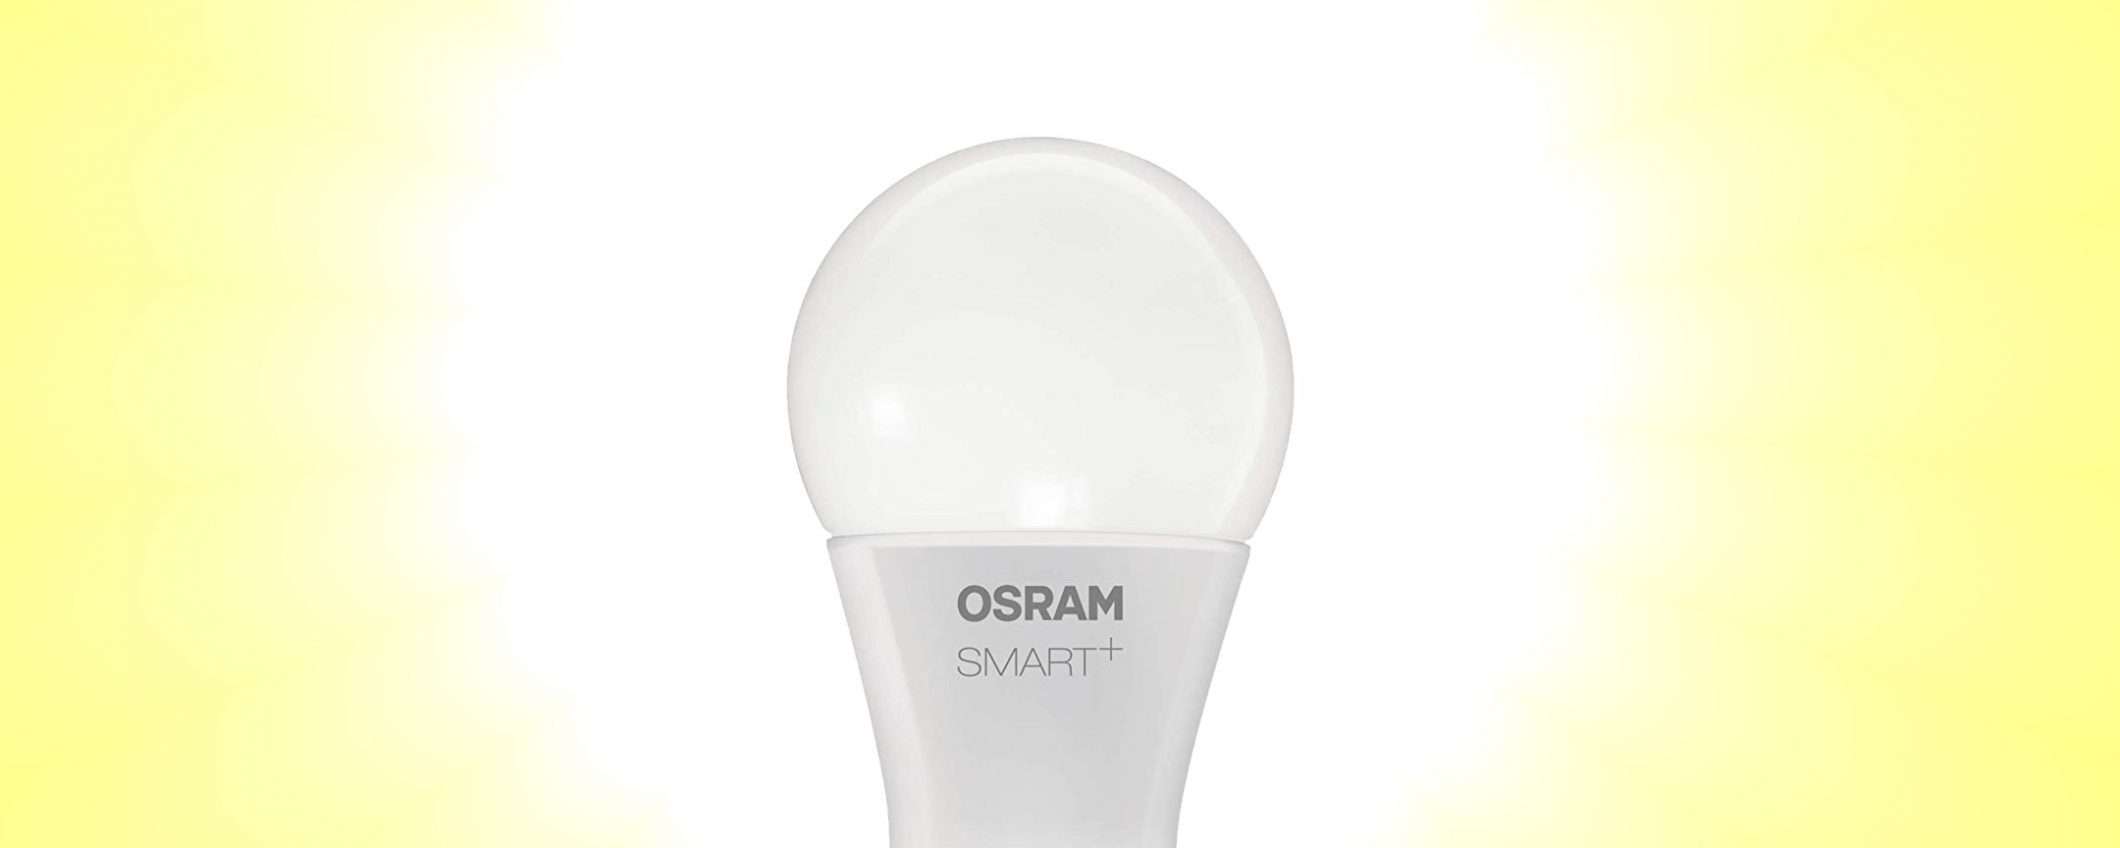 OSRAM Smart+, la lampadina che si accende con Alexa